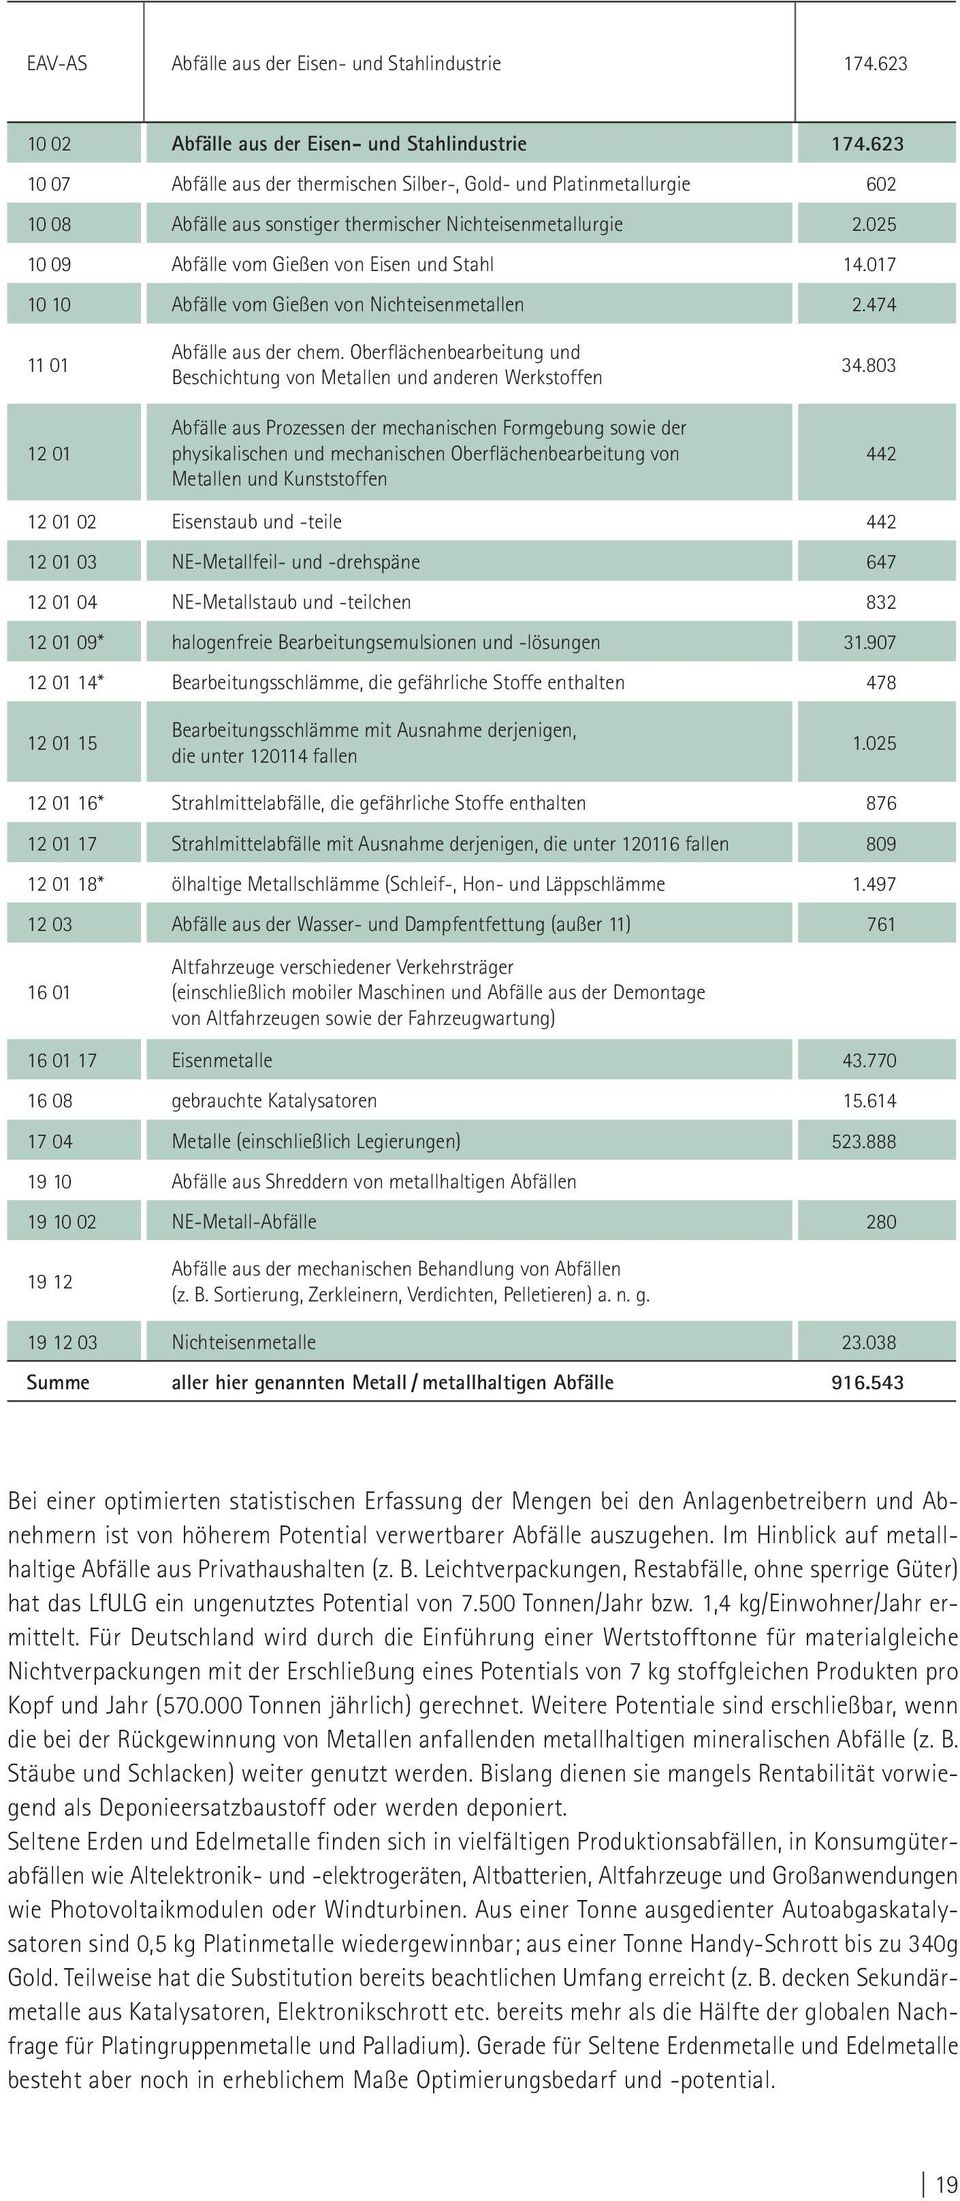 017 10 10 Abfälle vom Gießen von Nichteisenmetallen 2.474 11 01 12 01 Abfälle aus der chem.